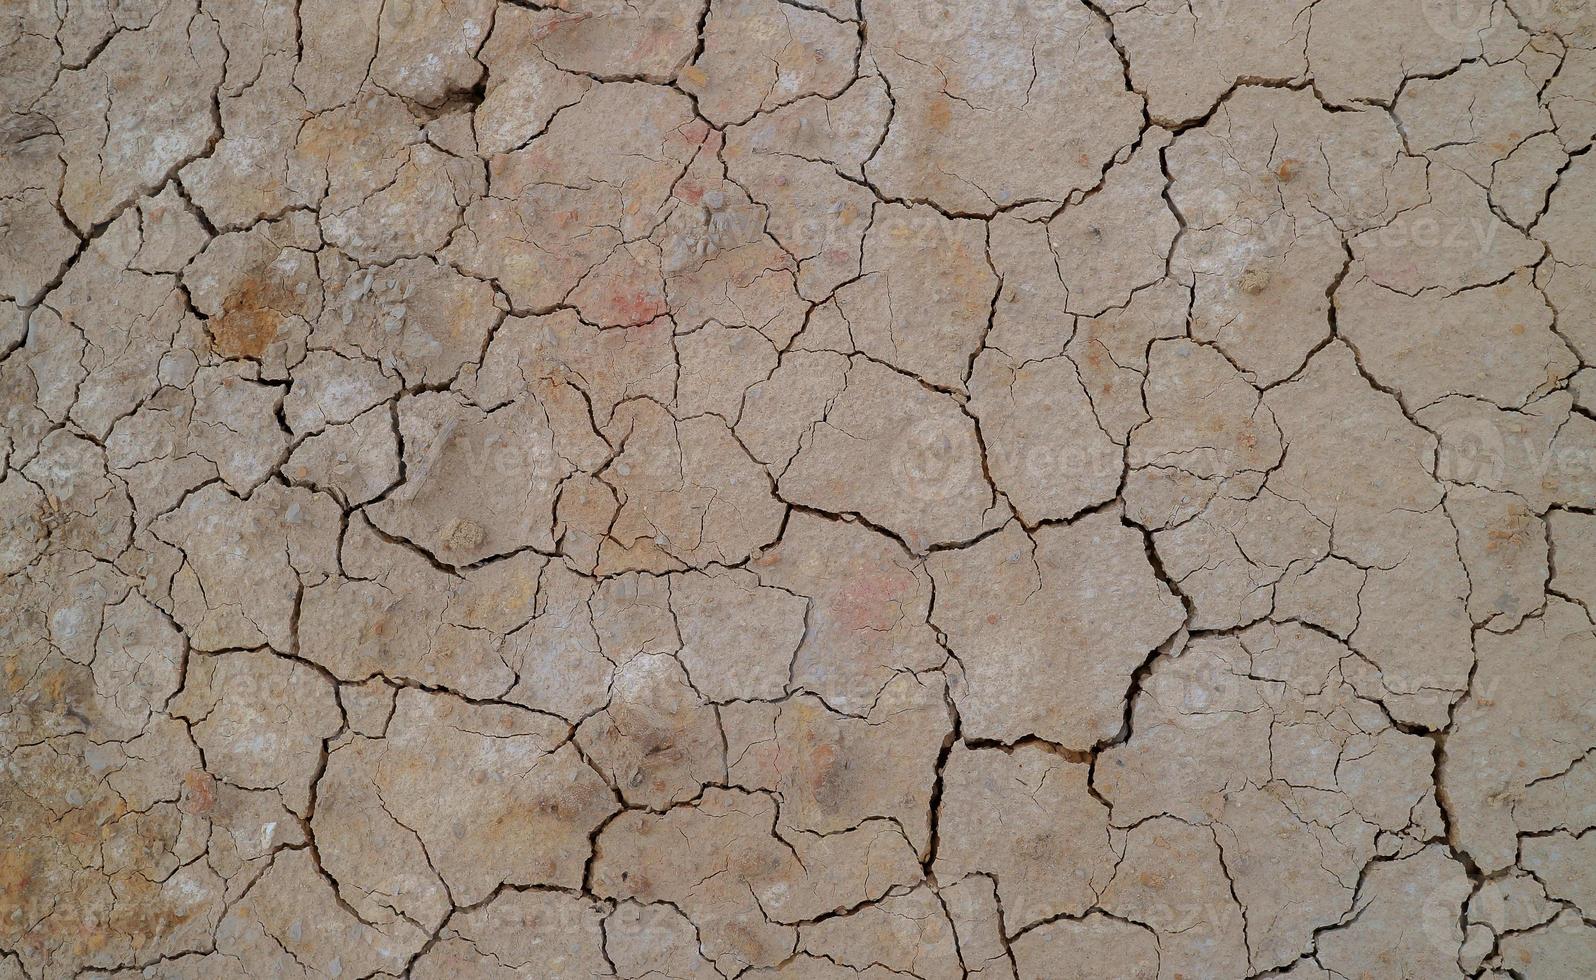 solo rachado devido à seca. a estação seca faz com que o solo seque e rache foto